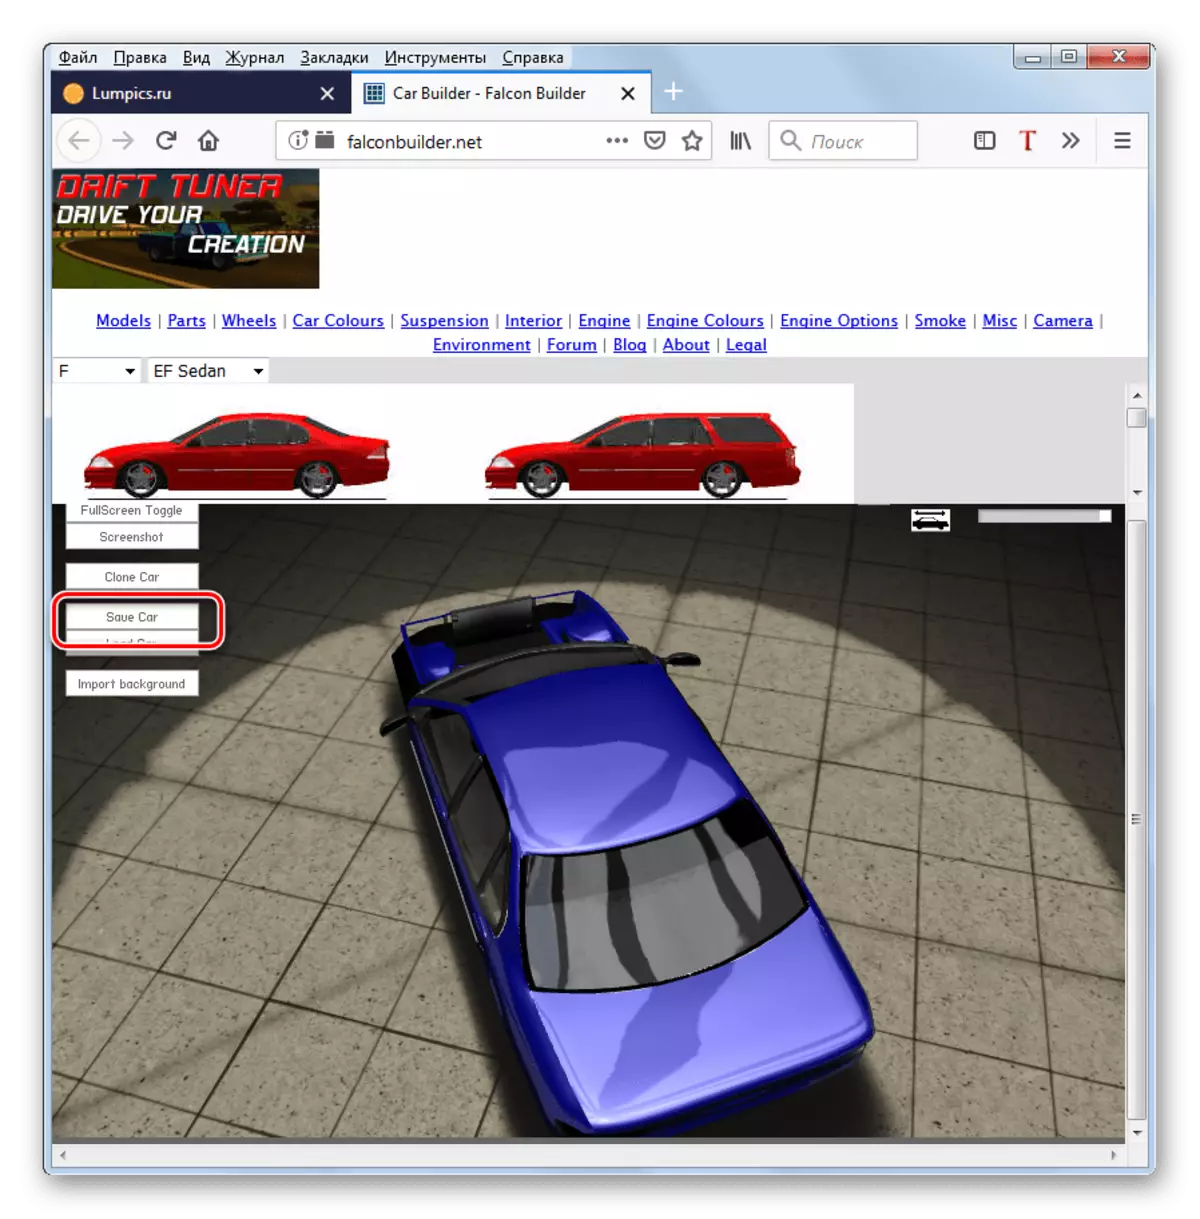 Siirtyminen tuloksena olevan auton kuvan säilyttämiseen Falconbuilder-verkkosivustossa Mozilla Firefox-selaimessa